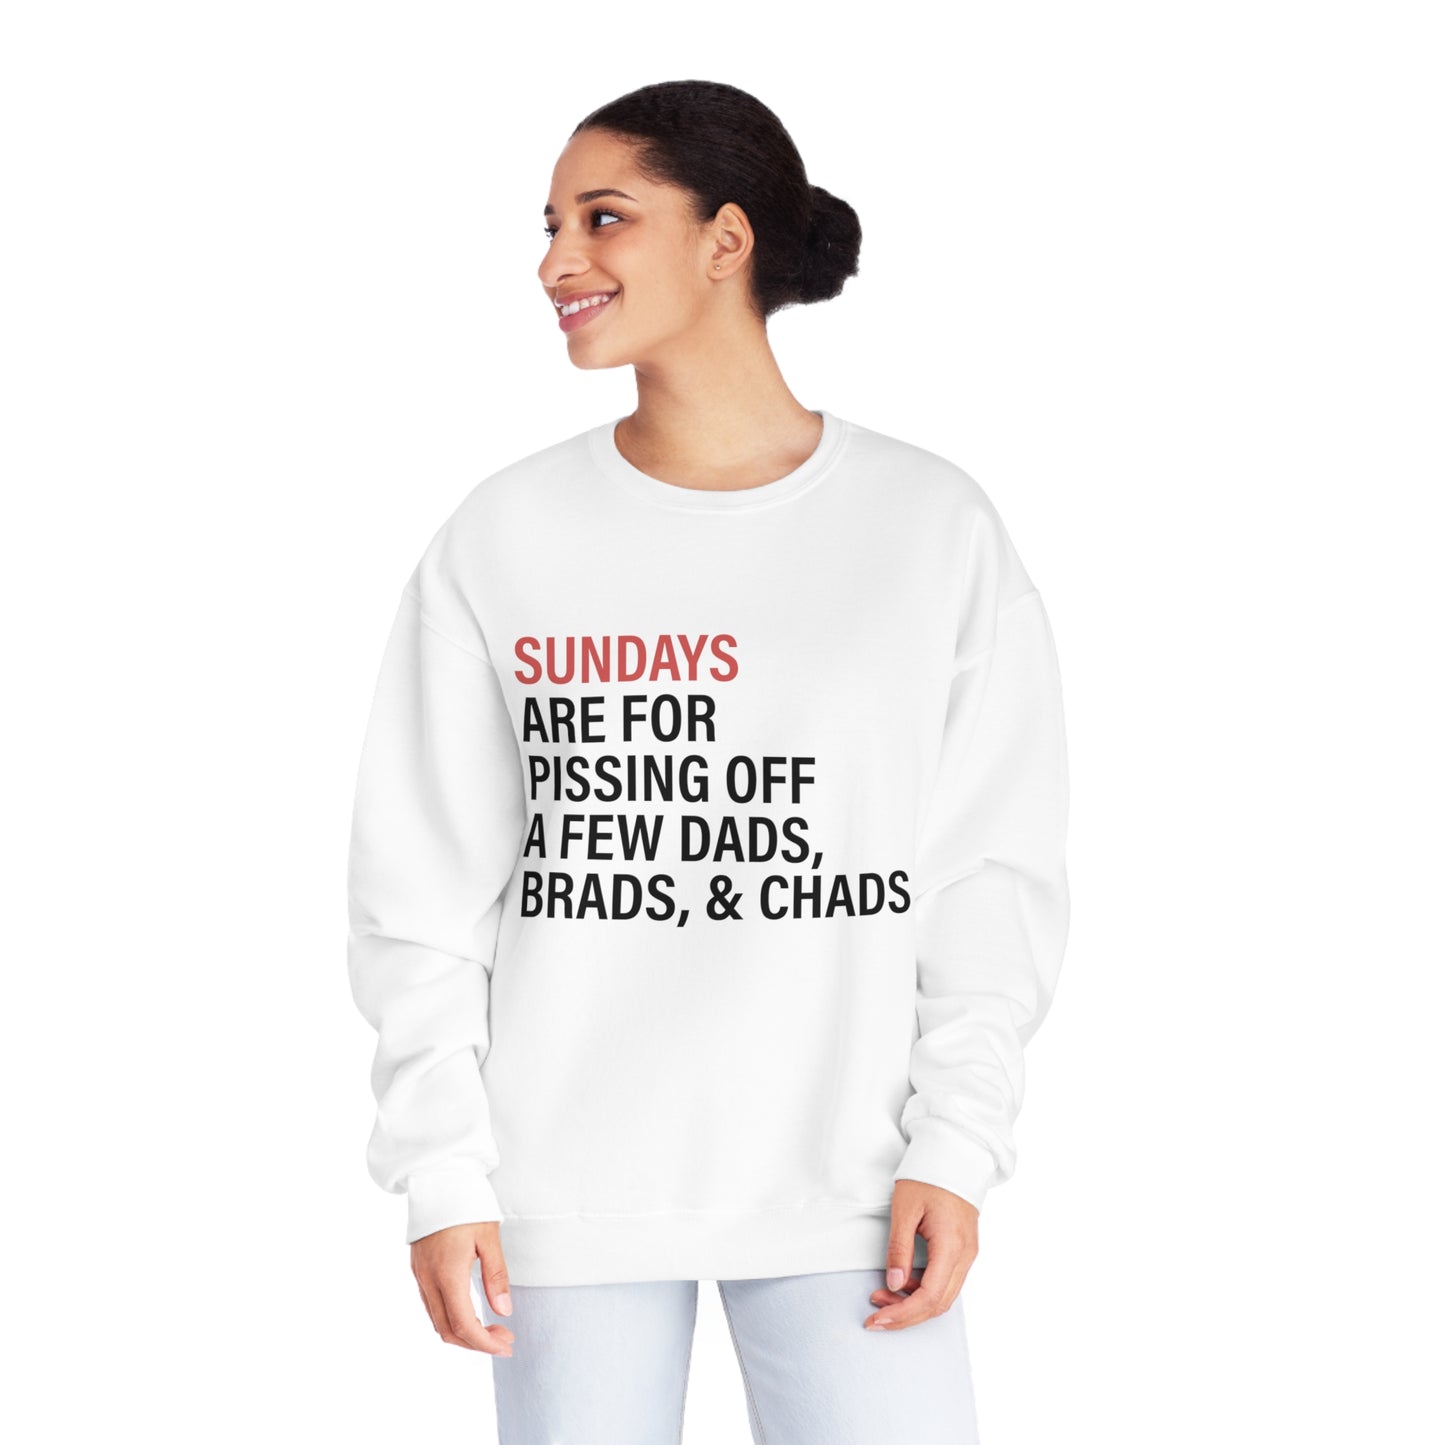 Sundays - Dads, Brads & Chads  - Unisex NuBlend® Crewneck Sweatshirt